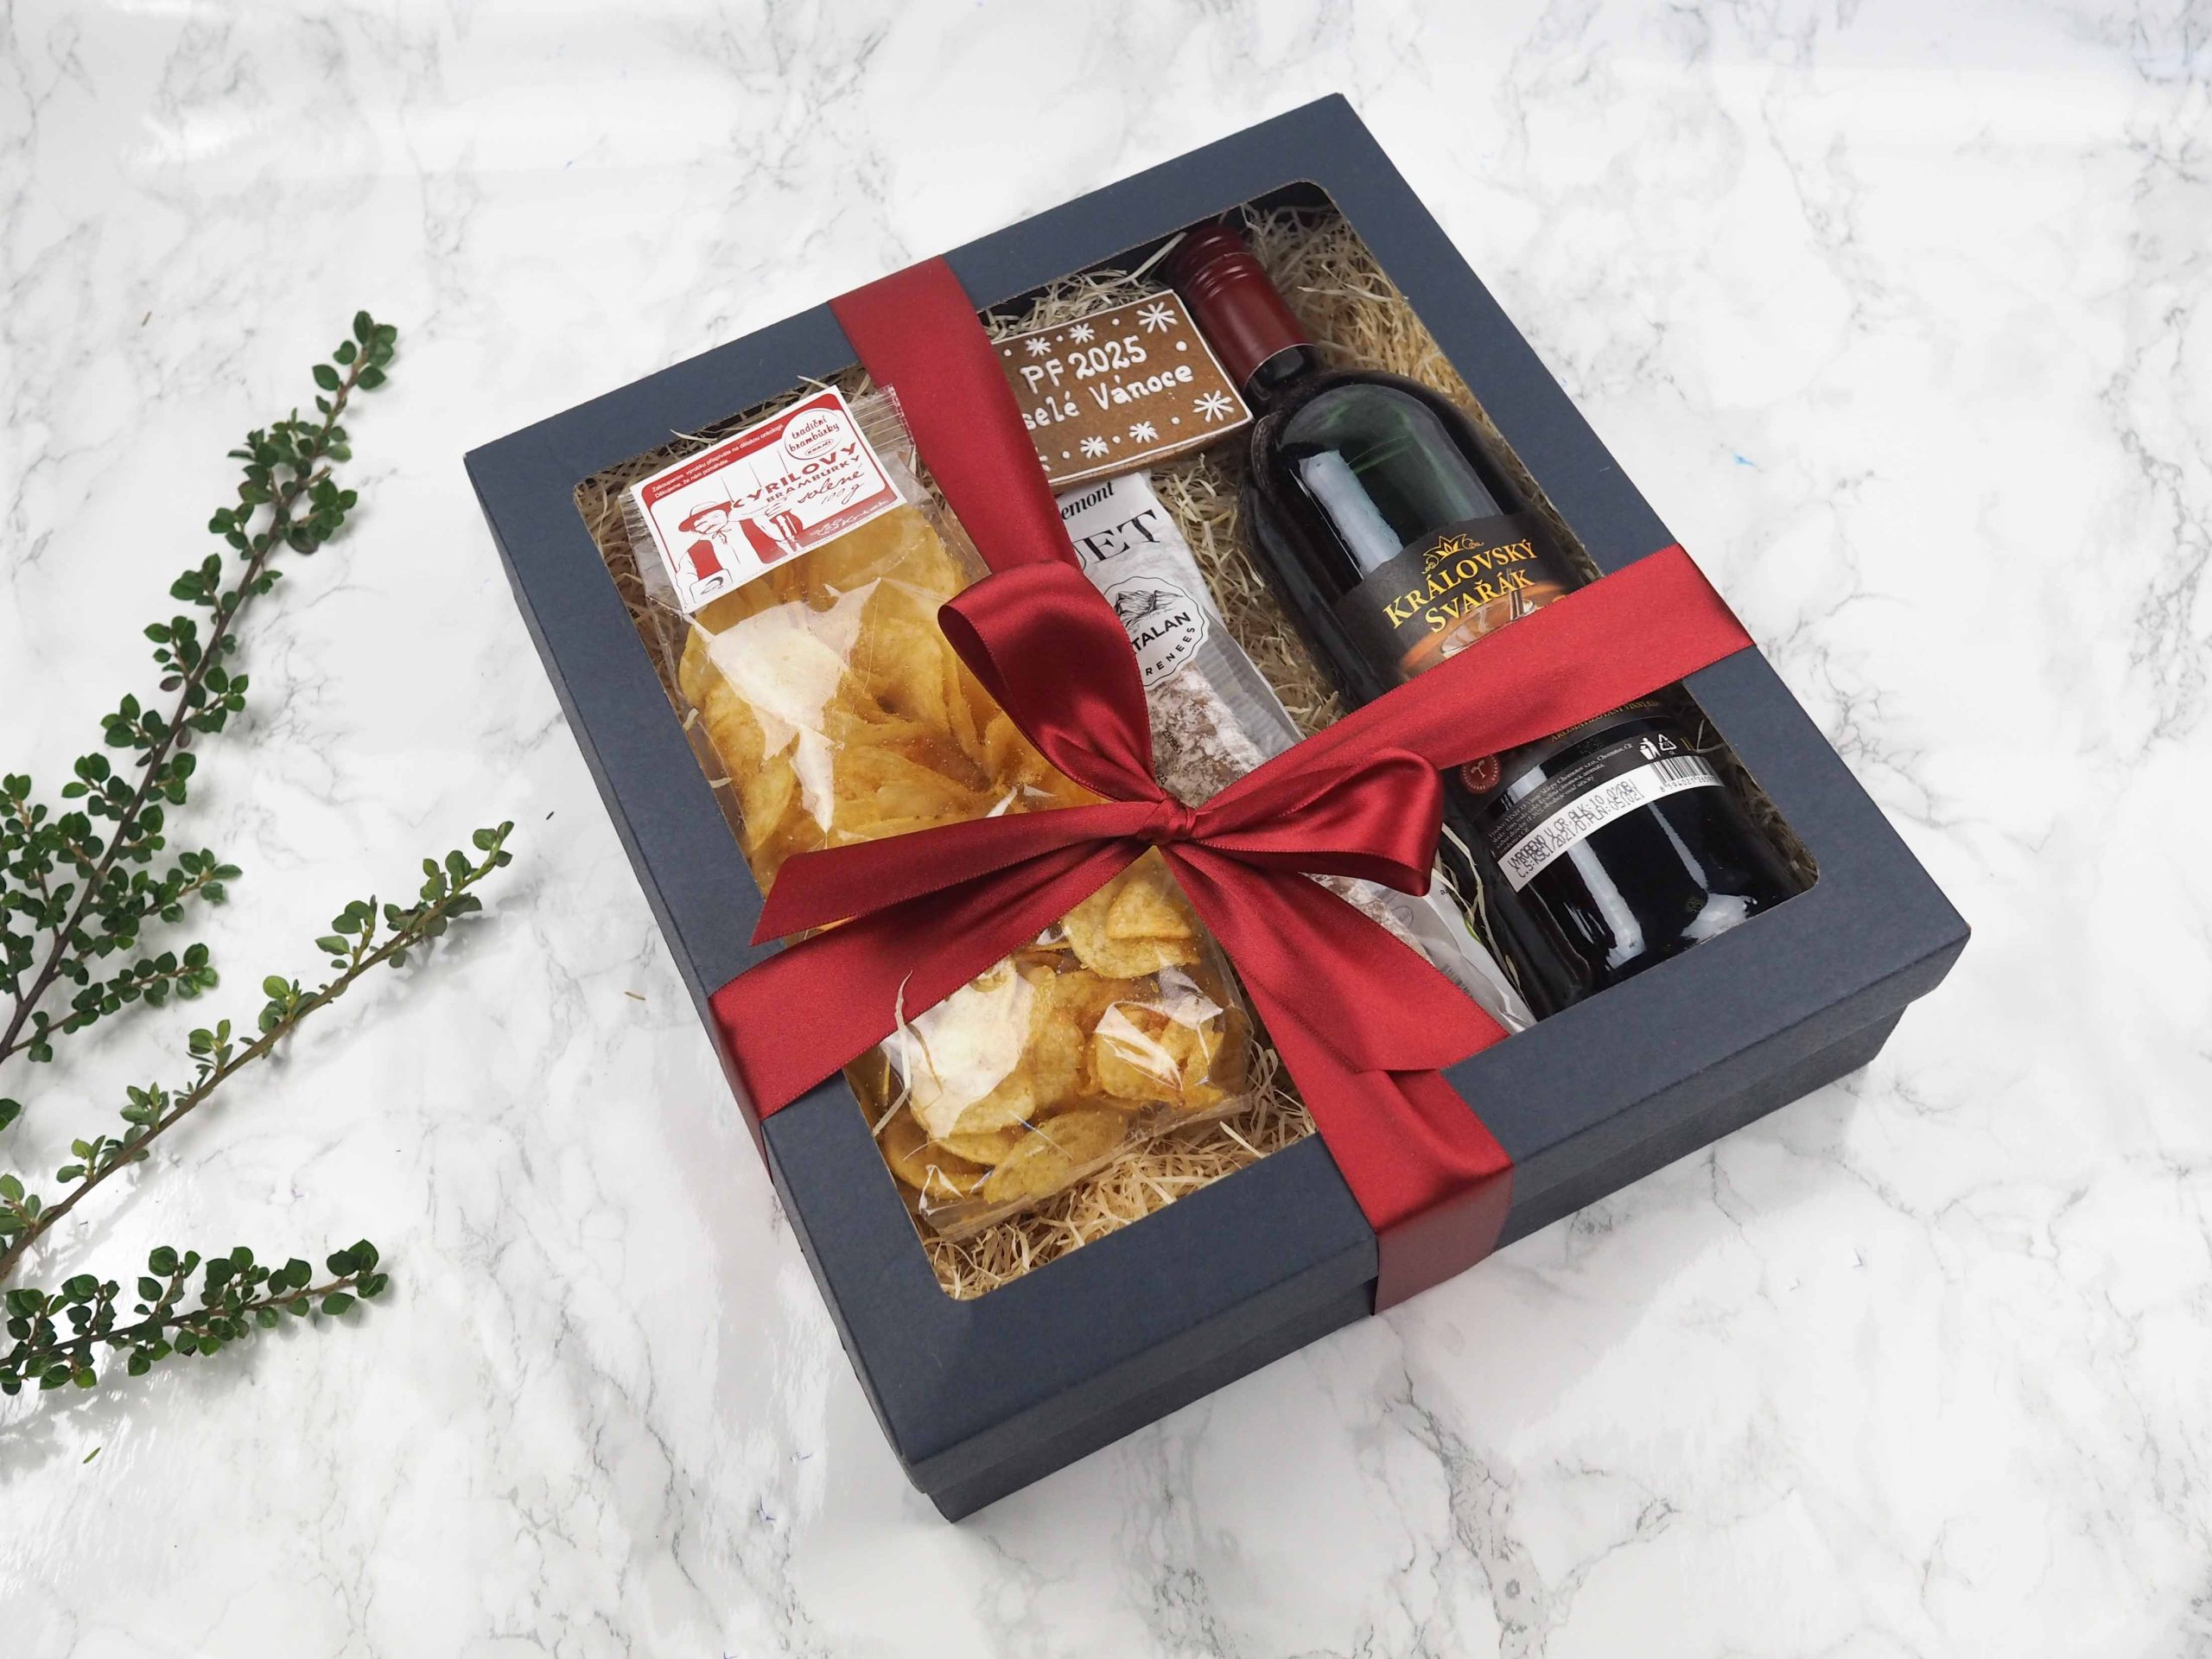 Dárkový balíček Svařený večer v sobě obsahuje slané bramborové lupínky, vepřový fuet, medový perníček s PF přáním a svařené víno.